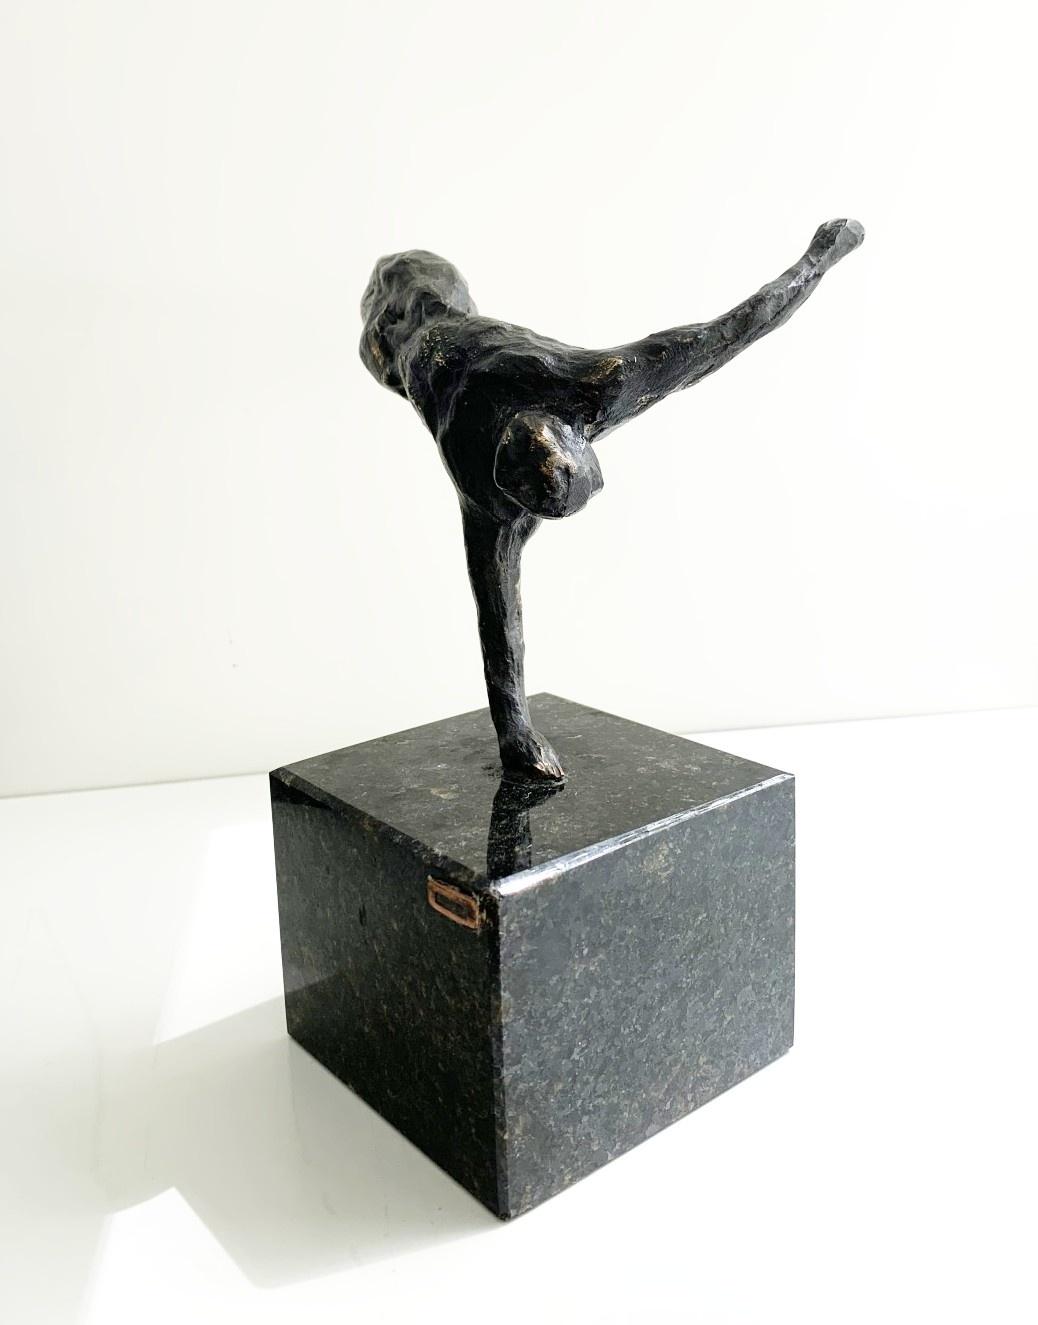 Ein Akrobat. Bronze-Figurenskulptur, Akt, Dynamische Komposition, Polnische Kunst – Sculpture von Ryszard Piotrowski